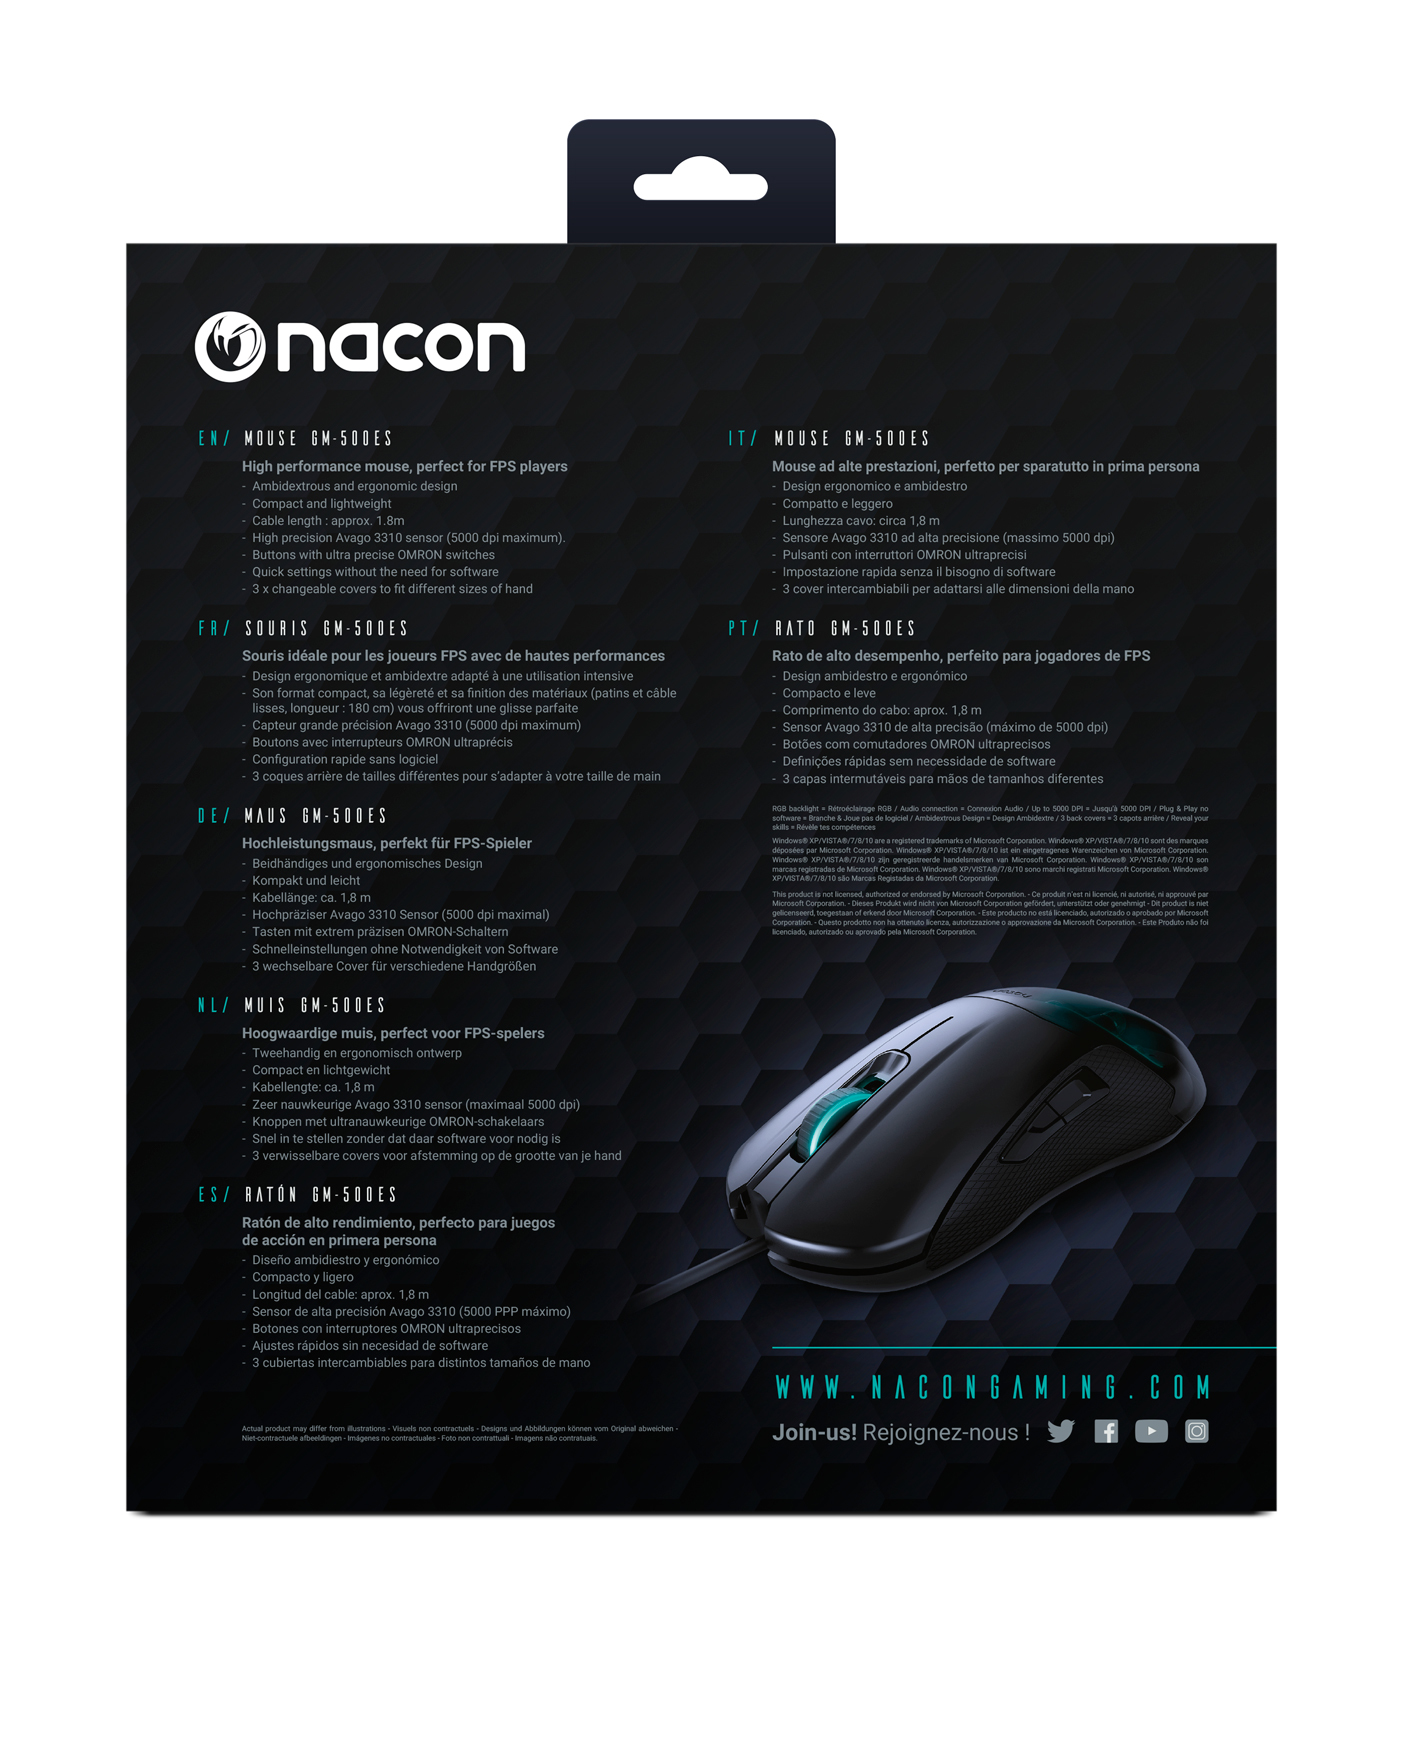 Nacon - Ratón Nacon GM-500